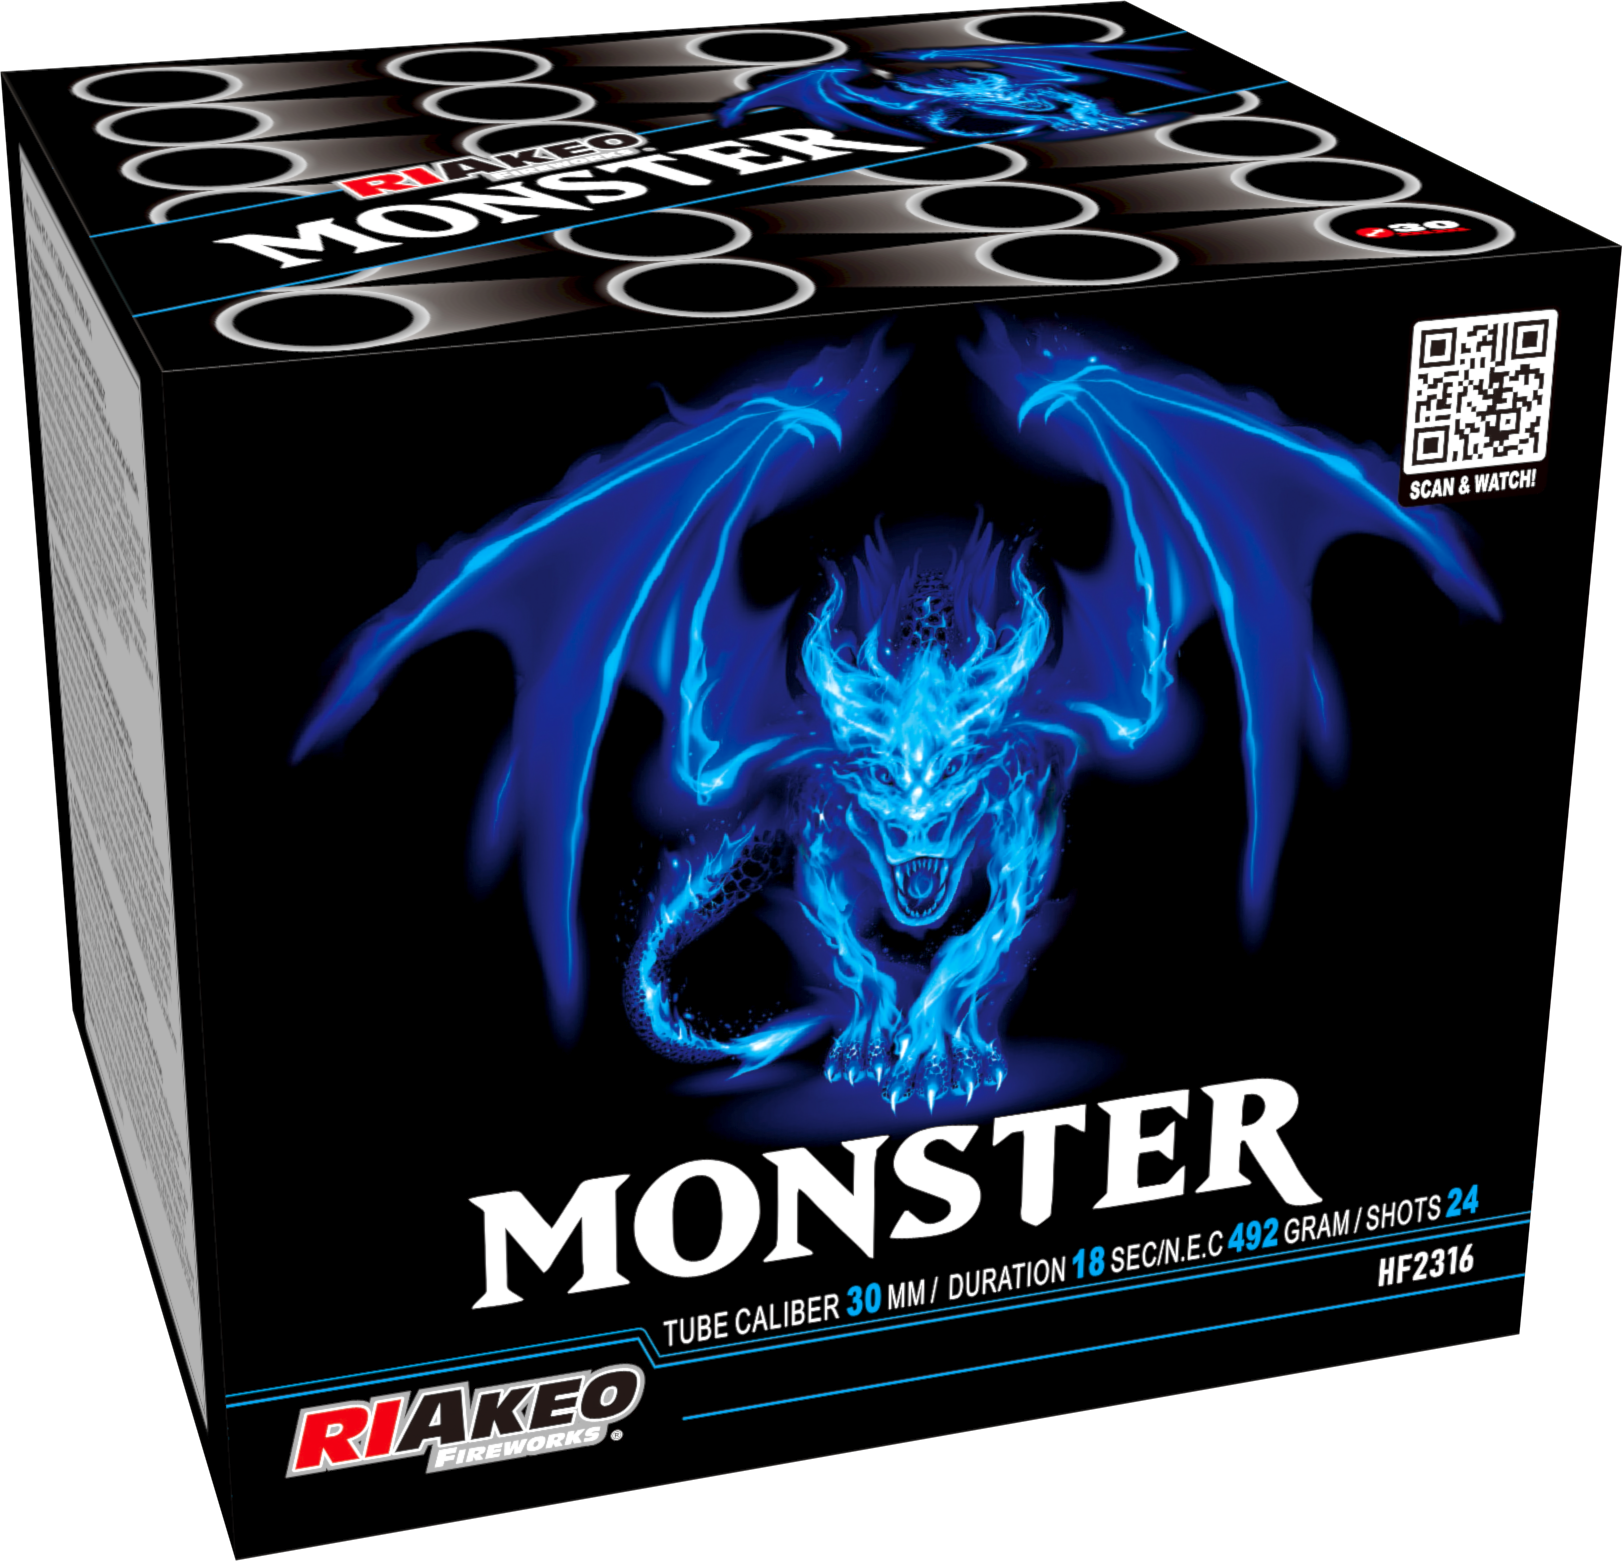 Riakeo Monster